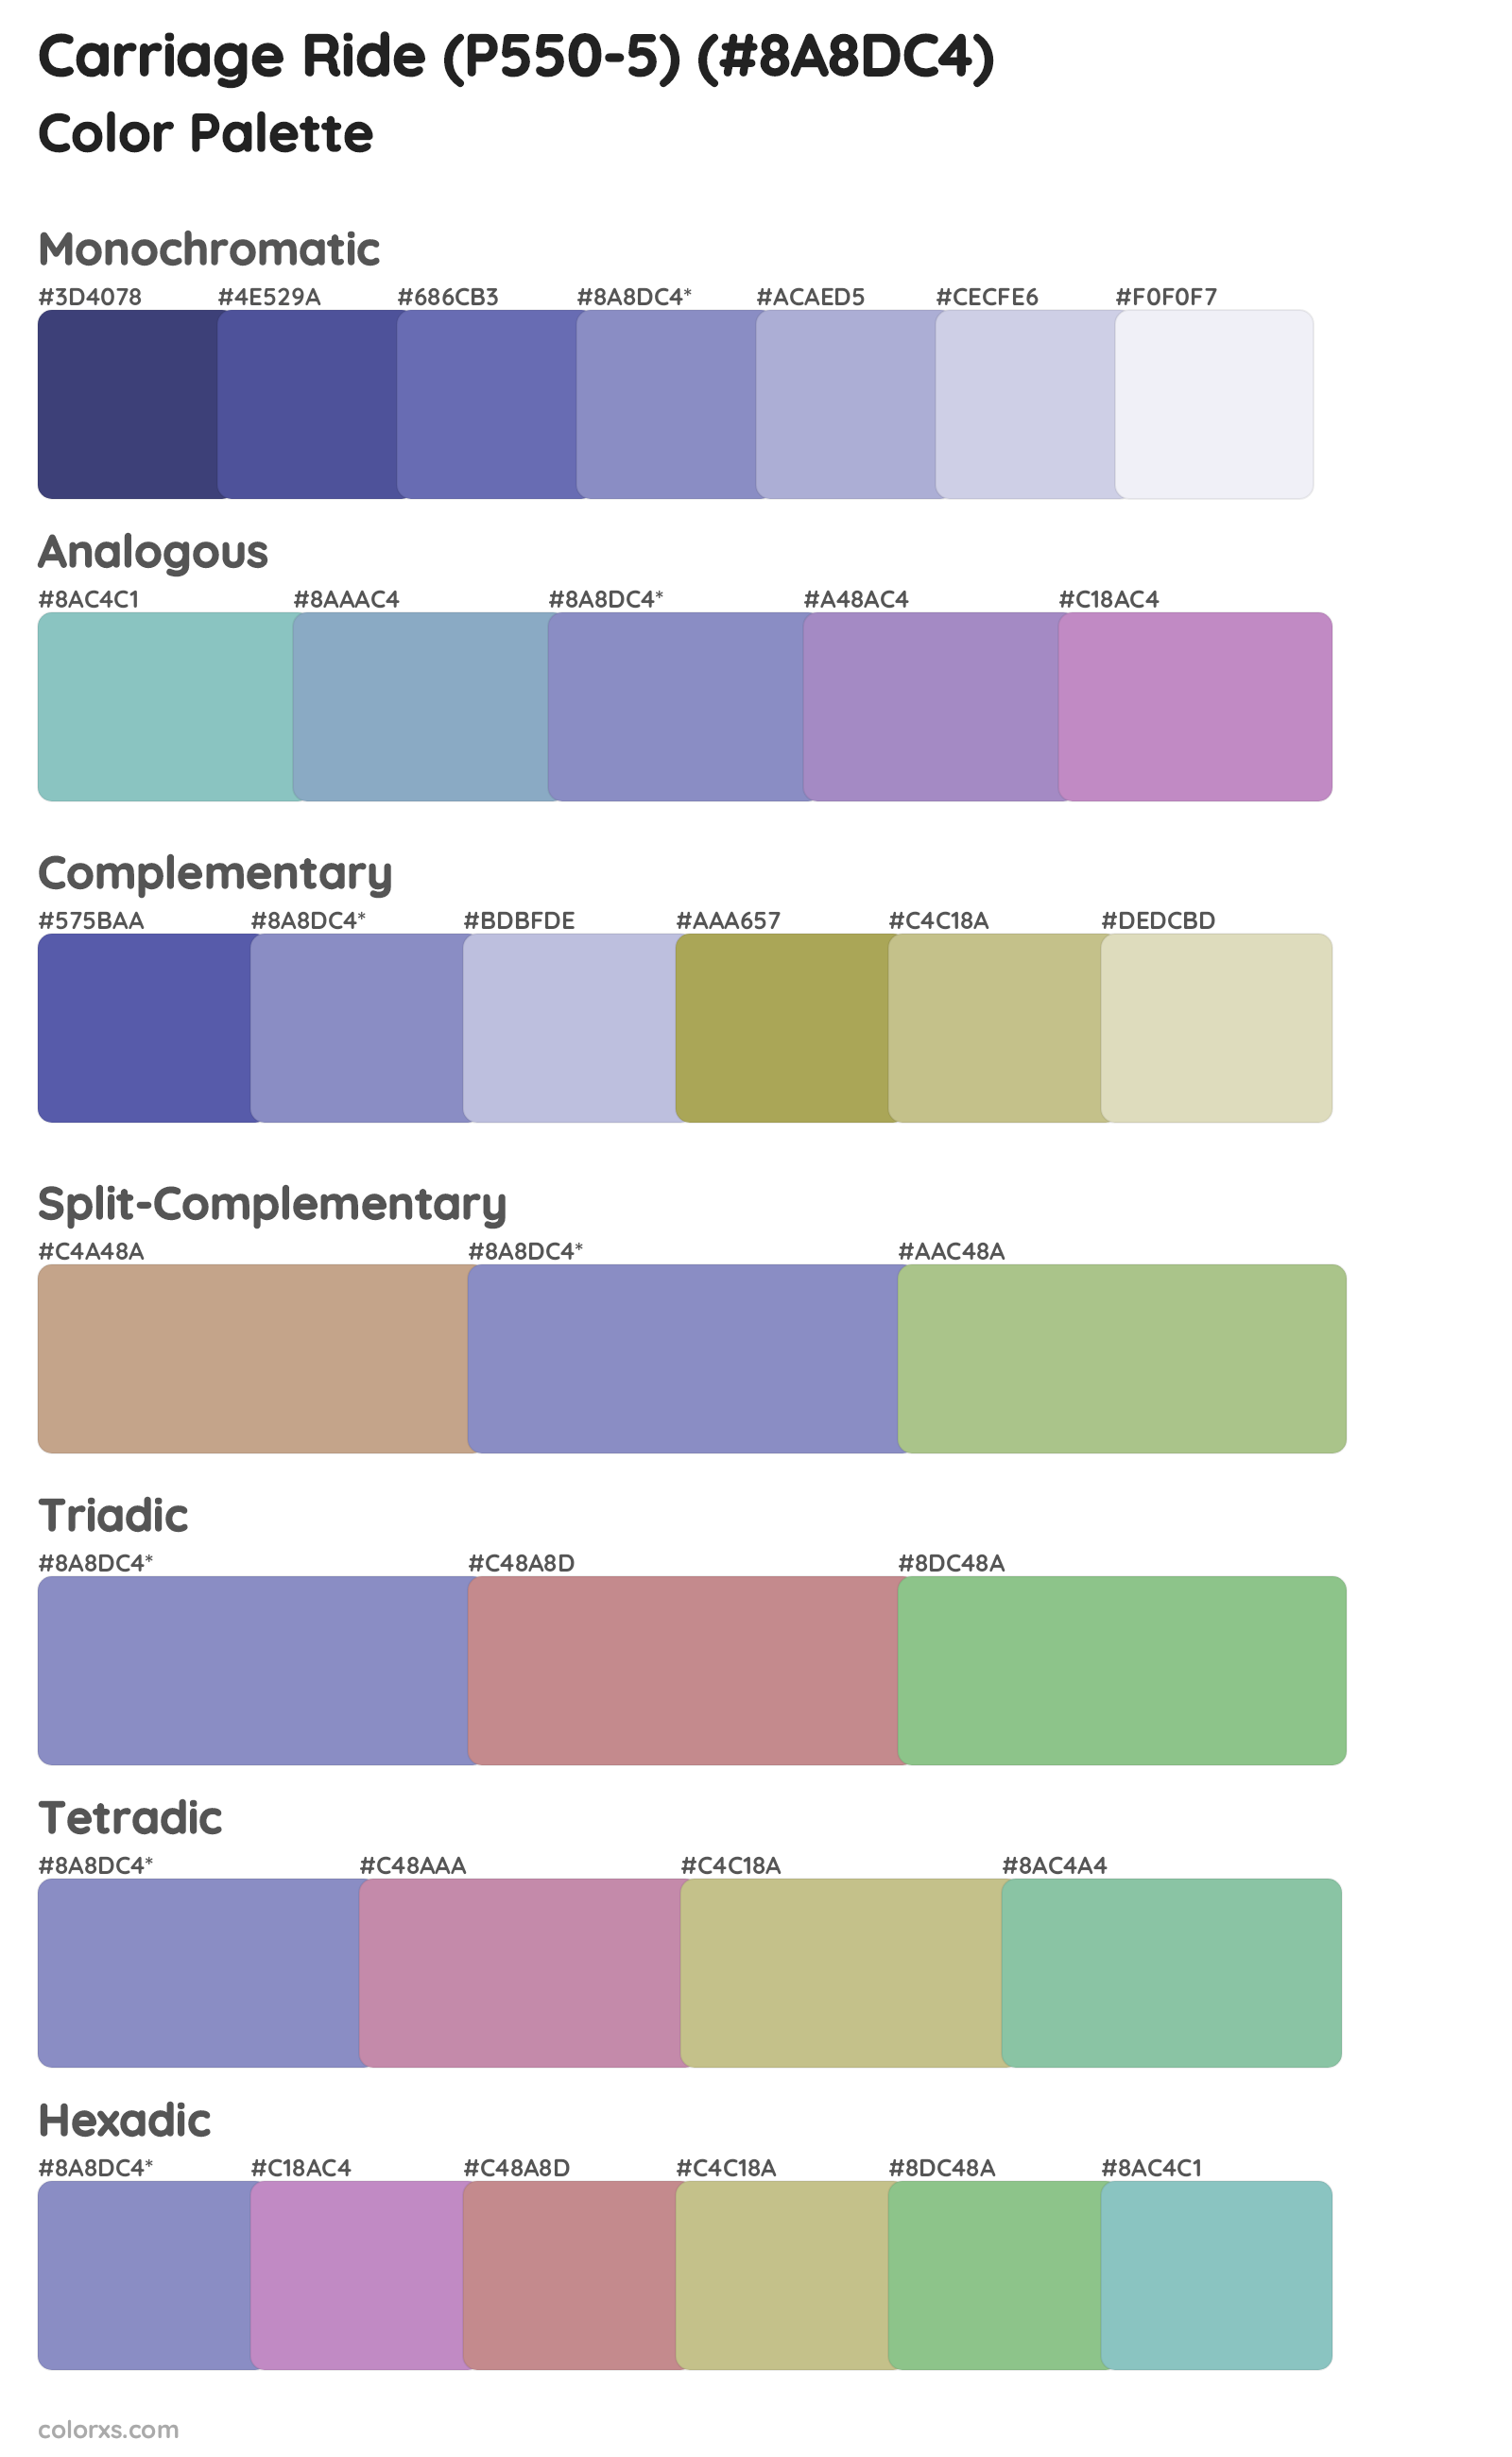 Carriage Ride (P550-5) Color Scheme Palettes